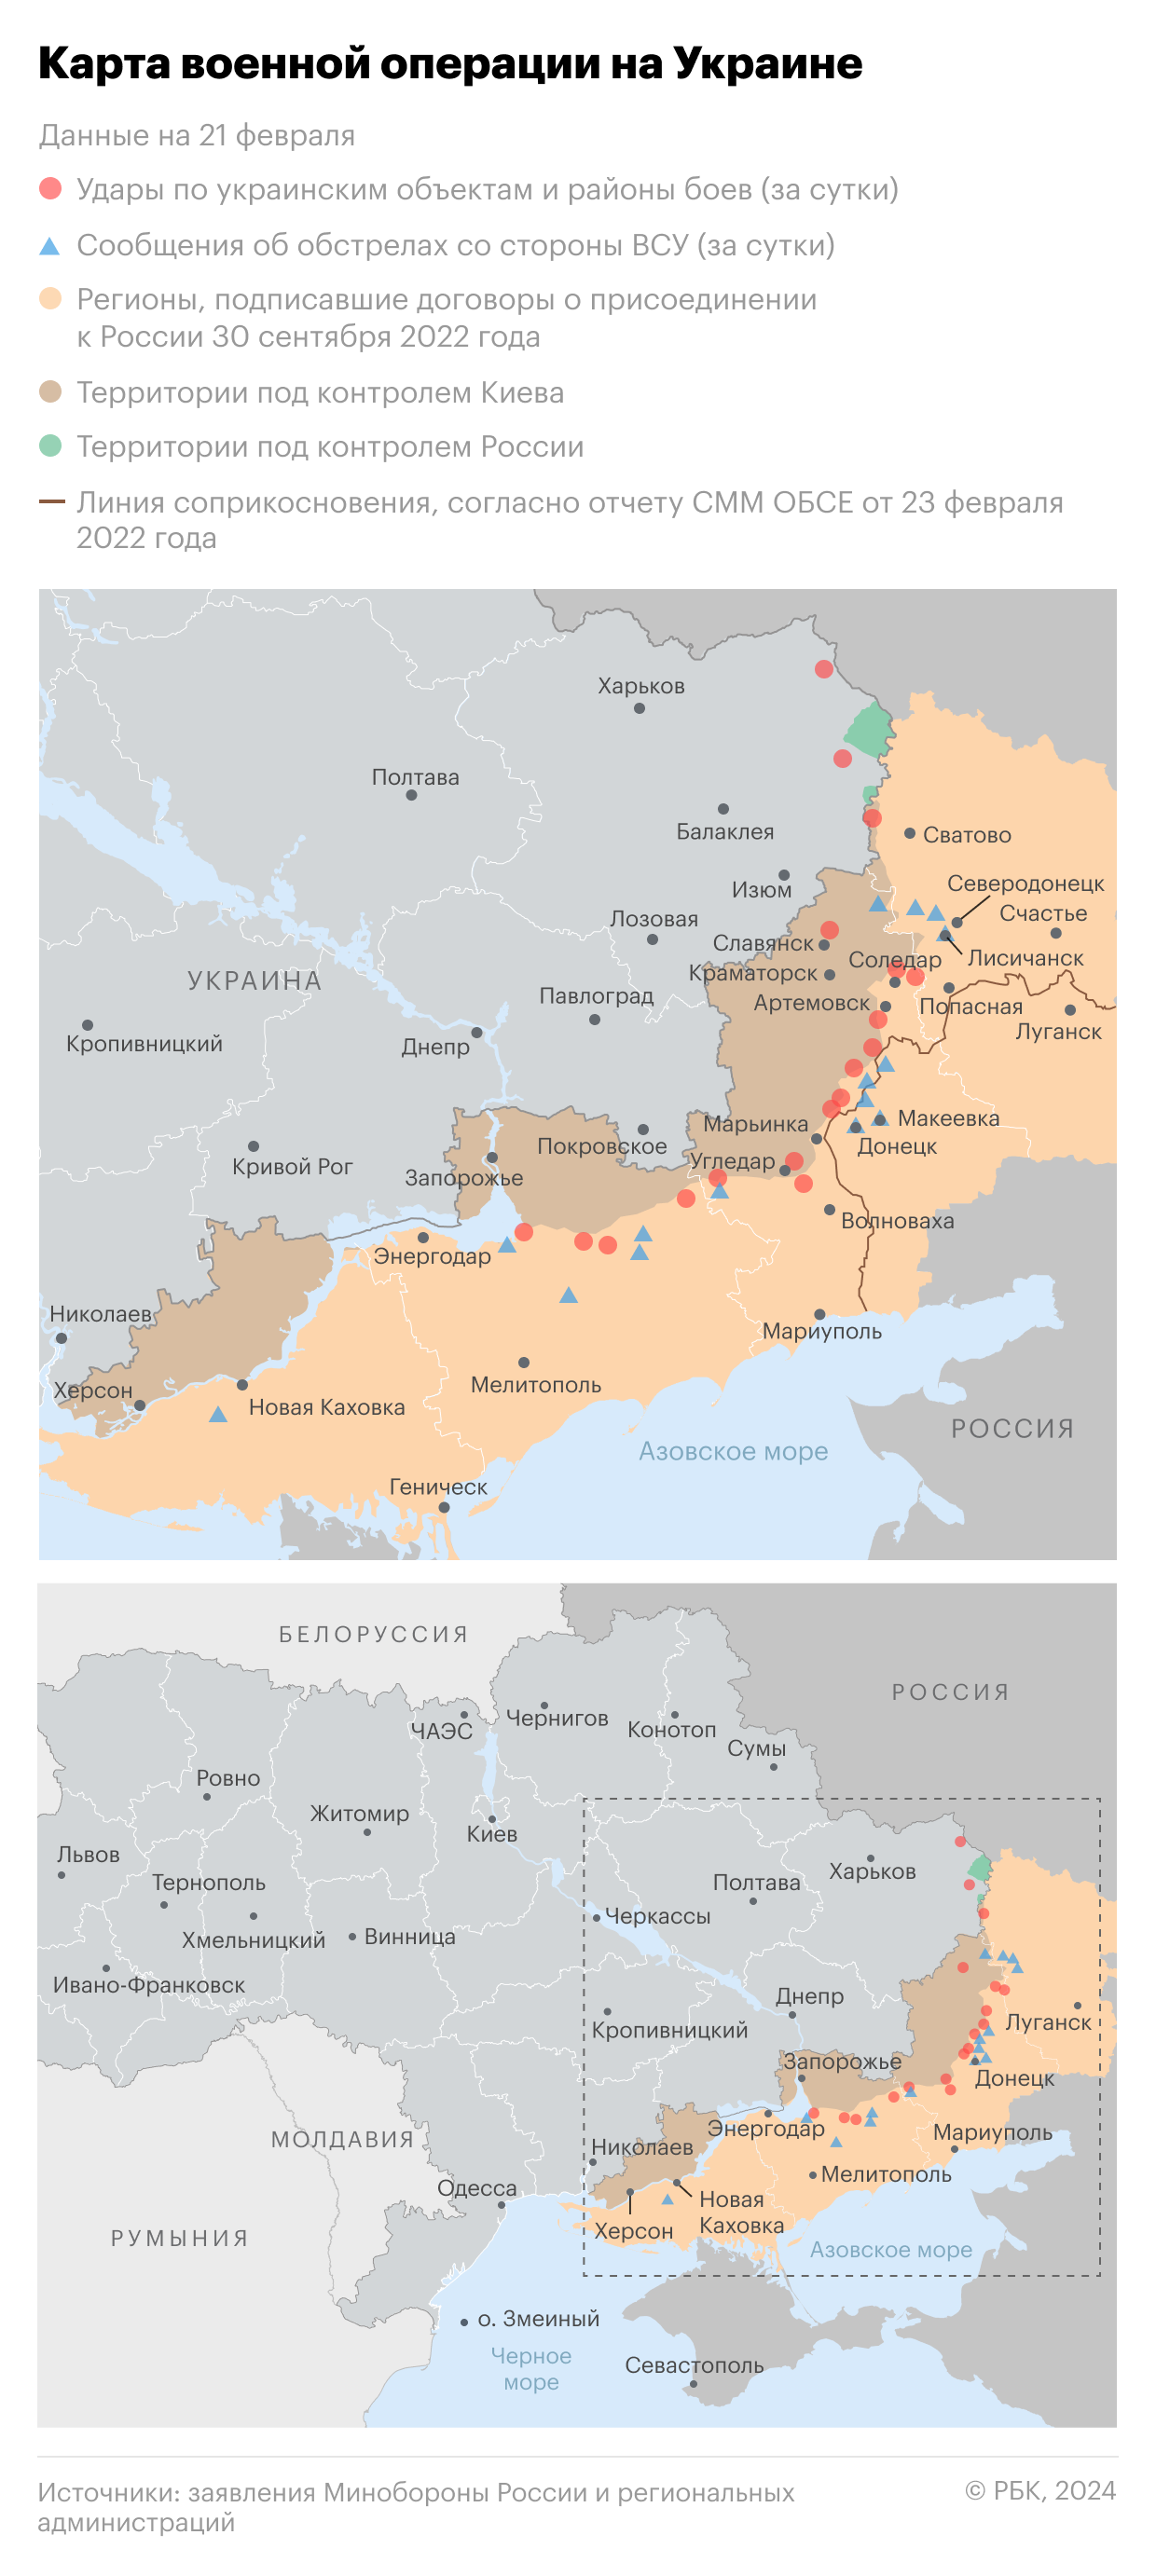 Военная операция на Украине. Карта на 20 февраля